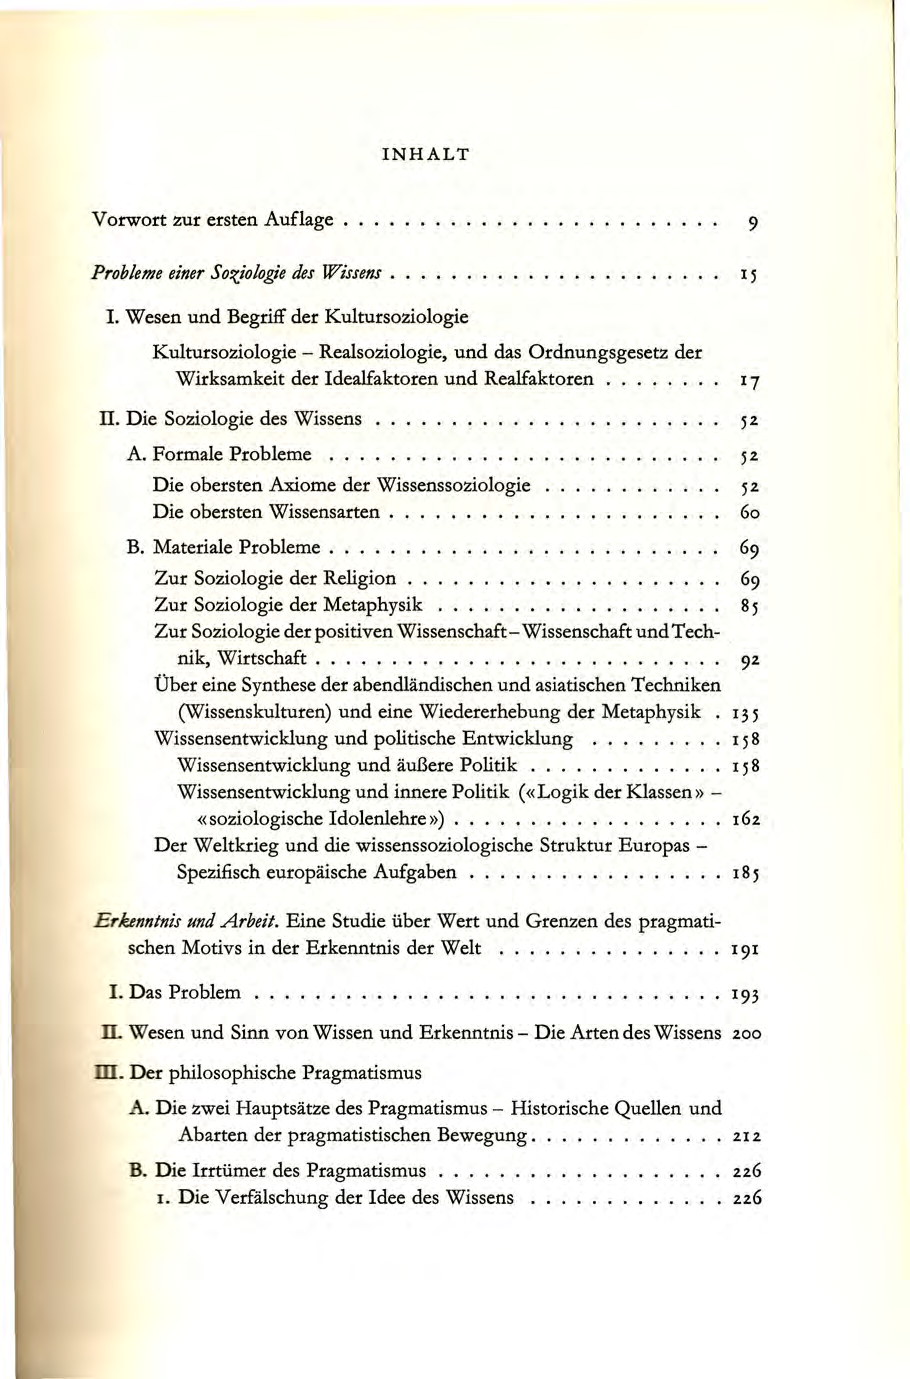 INHALT Vorwort zur ersten Auflage.... 9 Probleme einer Soziologie des Wissens. I.